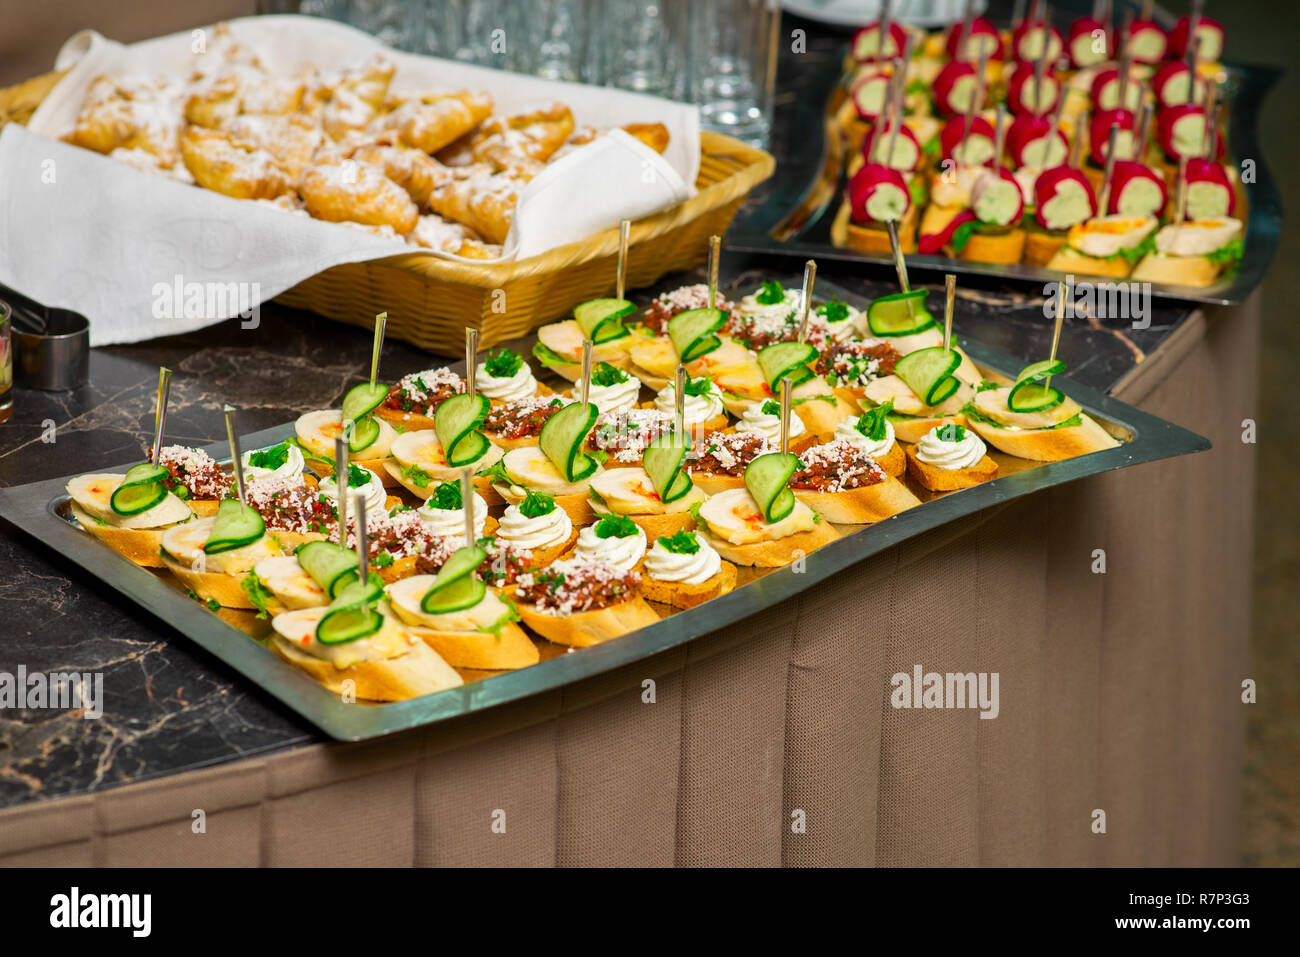 Des canapés et des entrées froides sur la table du buffet, viande, légumes  et fines herbes sur un plateau Photo Stock - Alamy